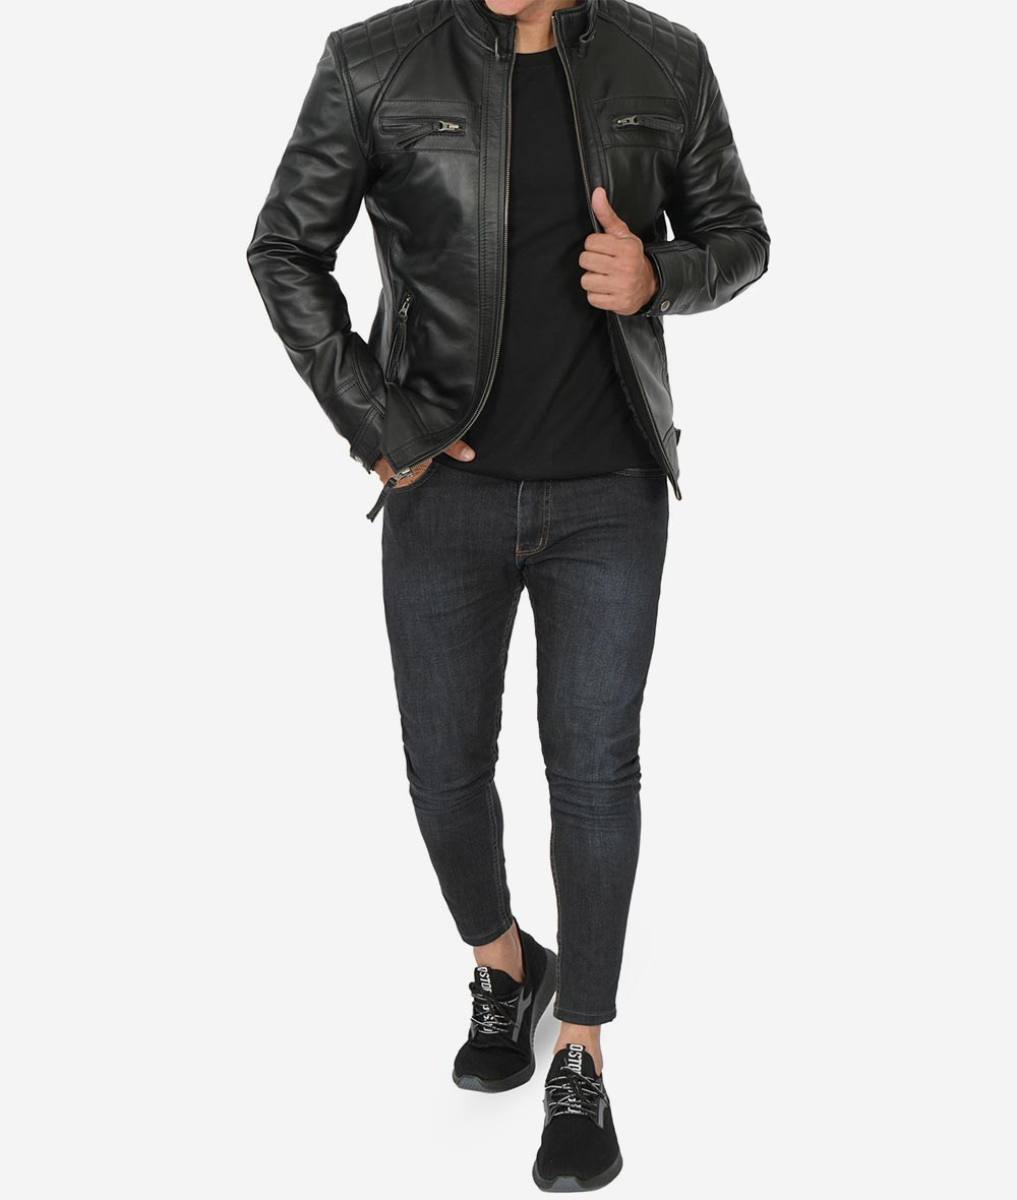 black_cafe_racer_biker_leather_jacket